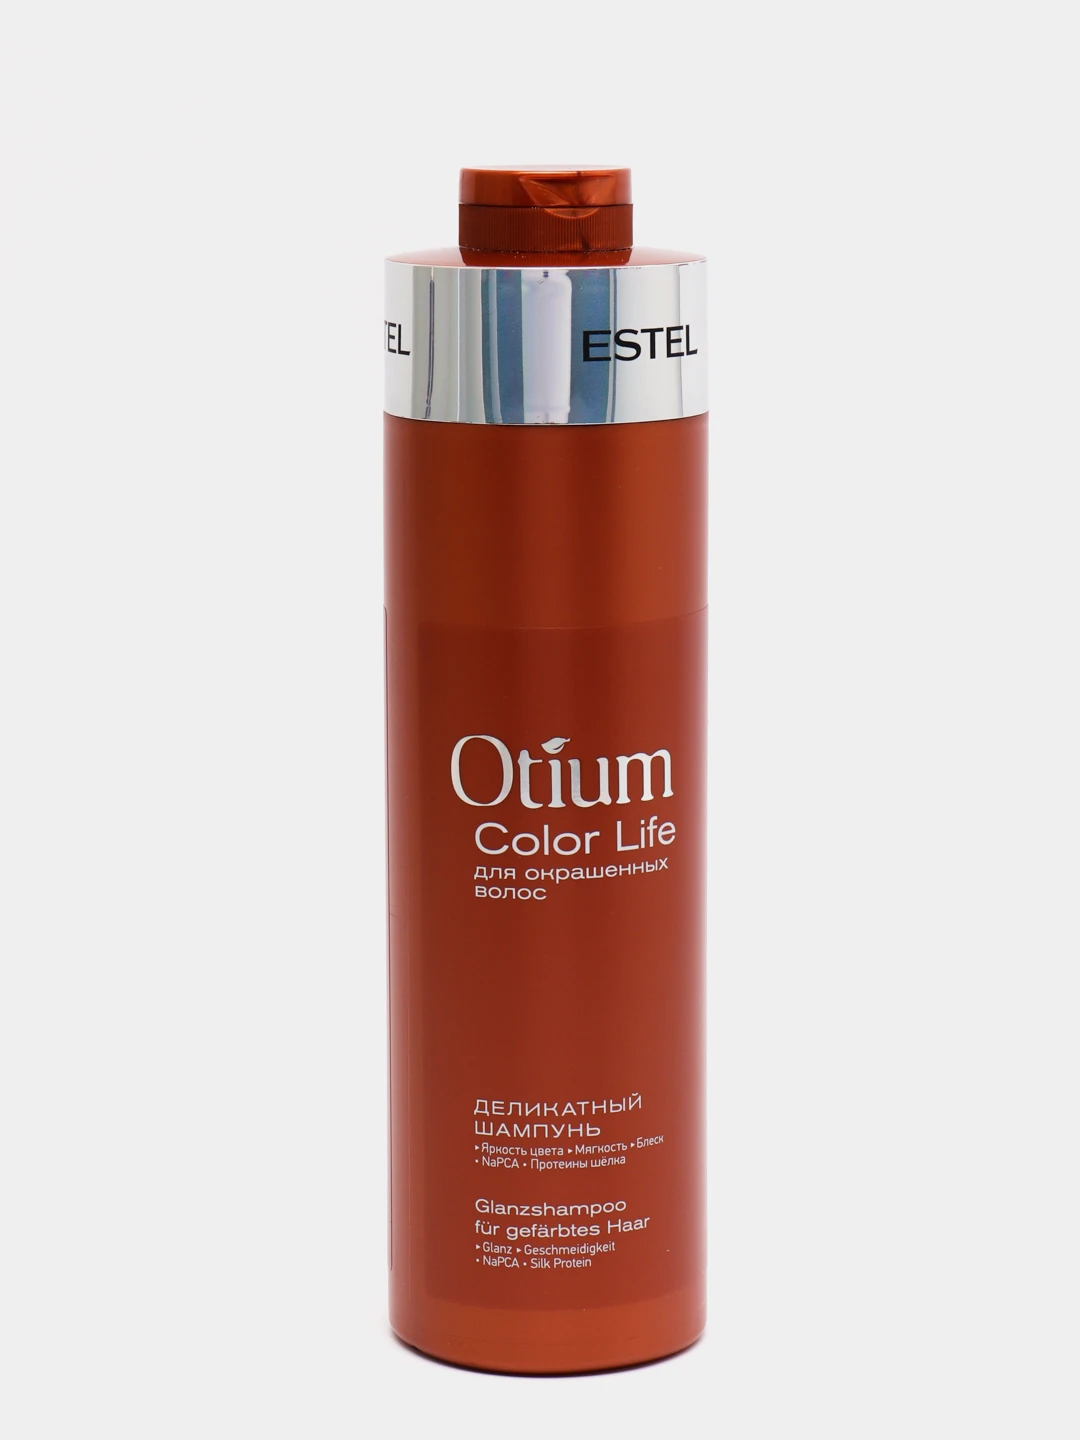 Otium color life. Estel Otium Color Life шампунь. Otium Color Life для окрашенных волос. Деликатный шампунь для окрашенных волос Otium Color Life (1000 мл). Отиум Эстель шампунь 100 мл.